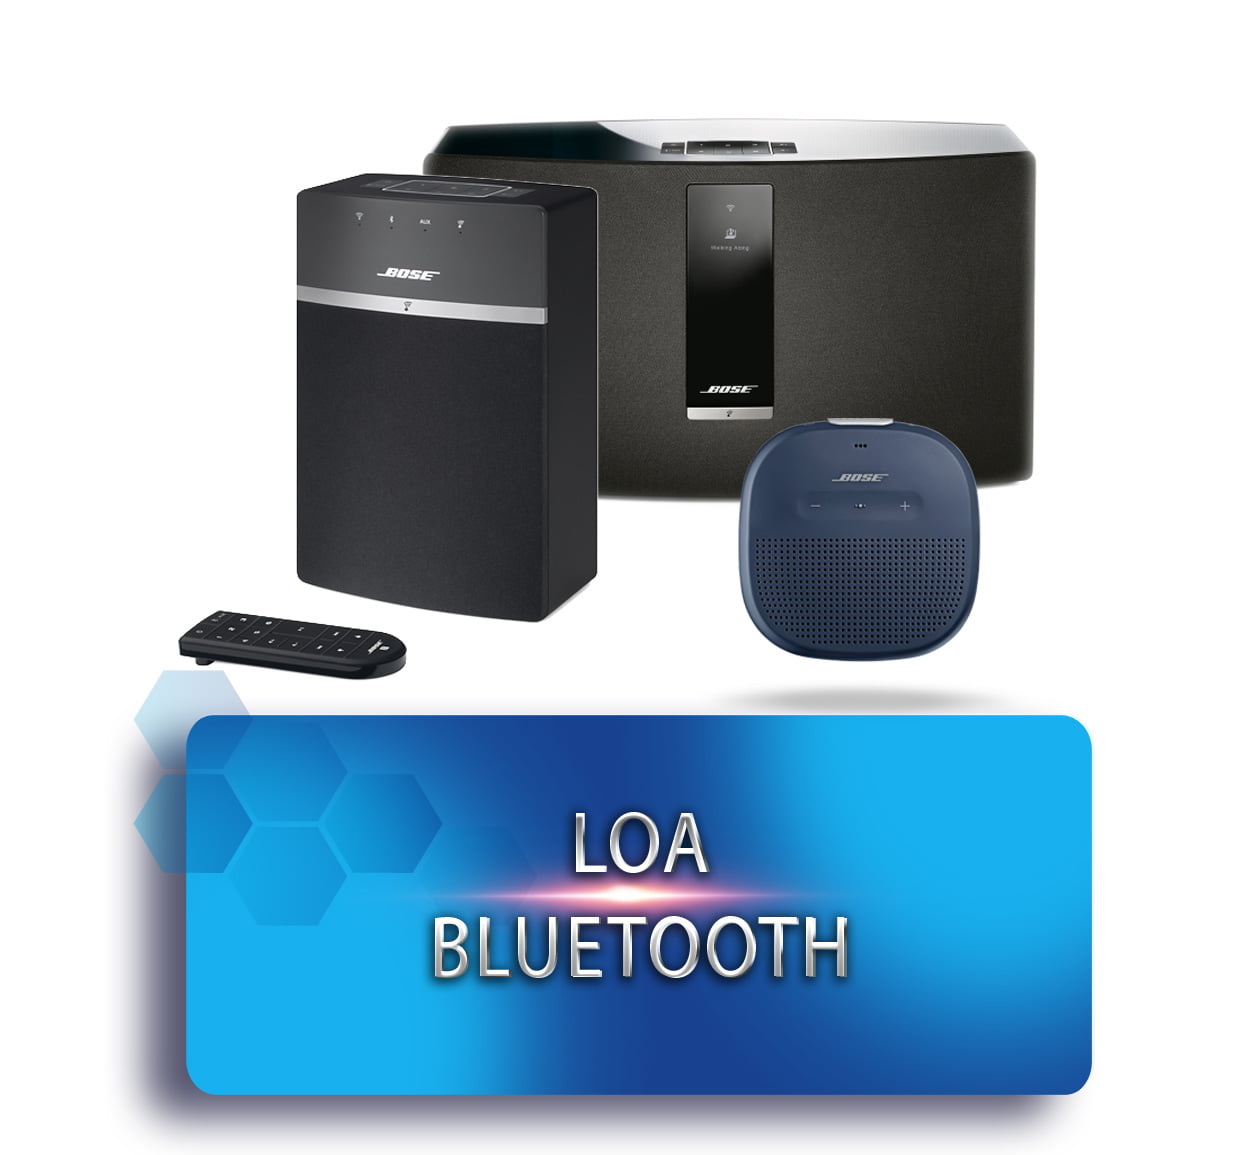 Loa Bluetooth